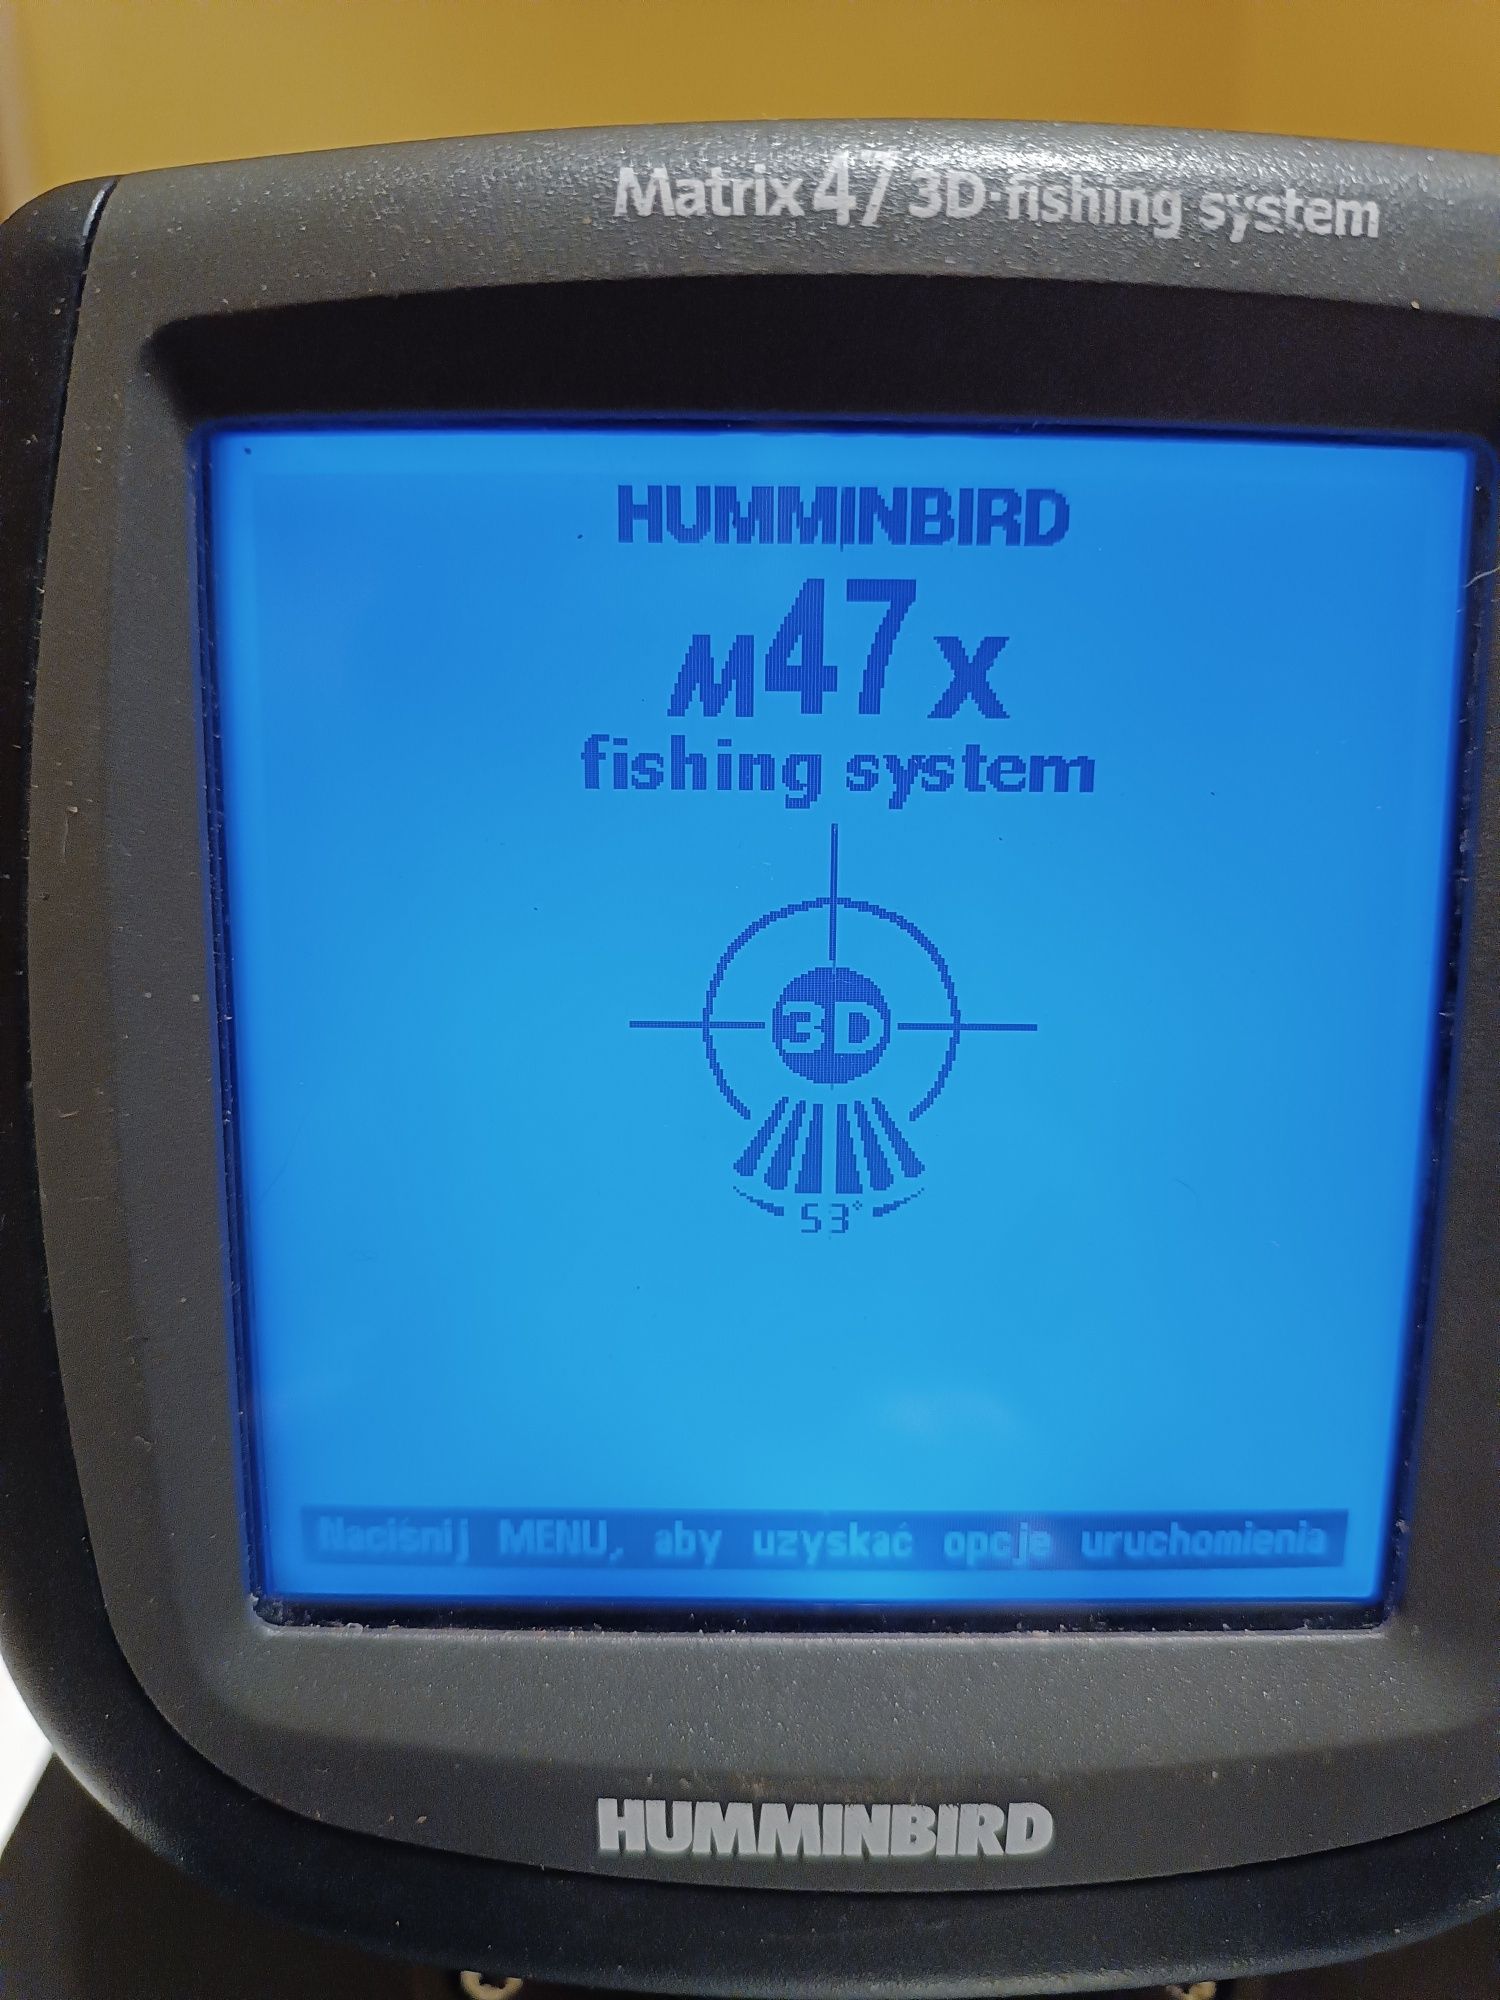 Echosonda Humminbird Matrix 47 3d fishing system